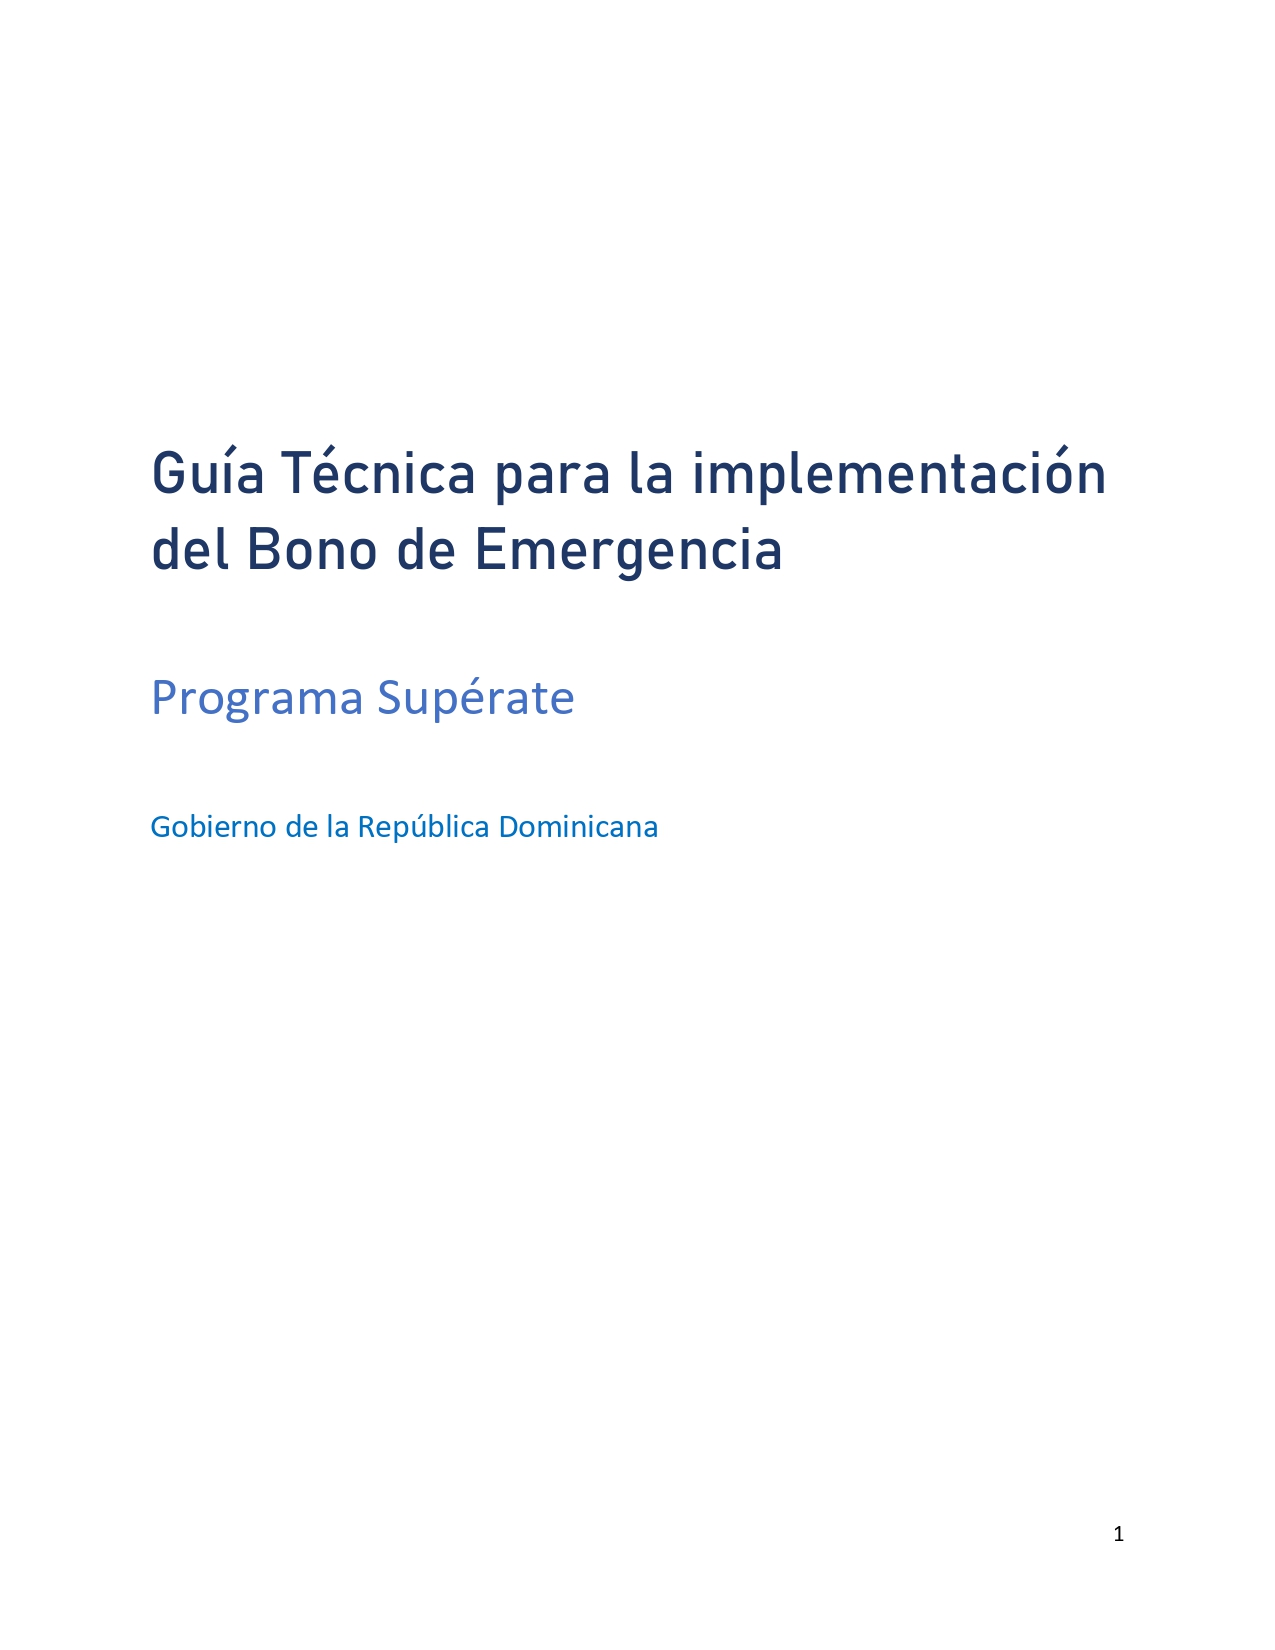 Guía Técnica Bono de Emergencia (6) 1 page 0001